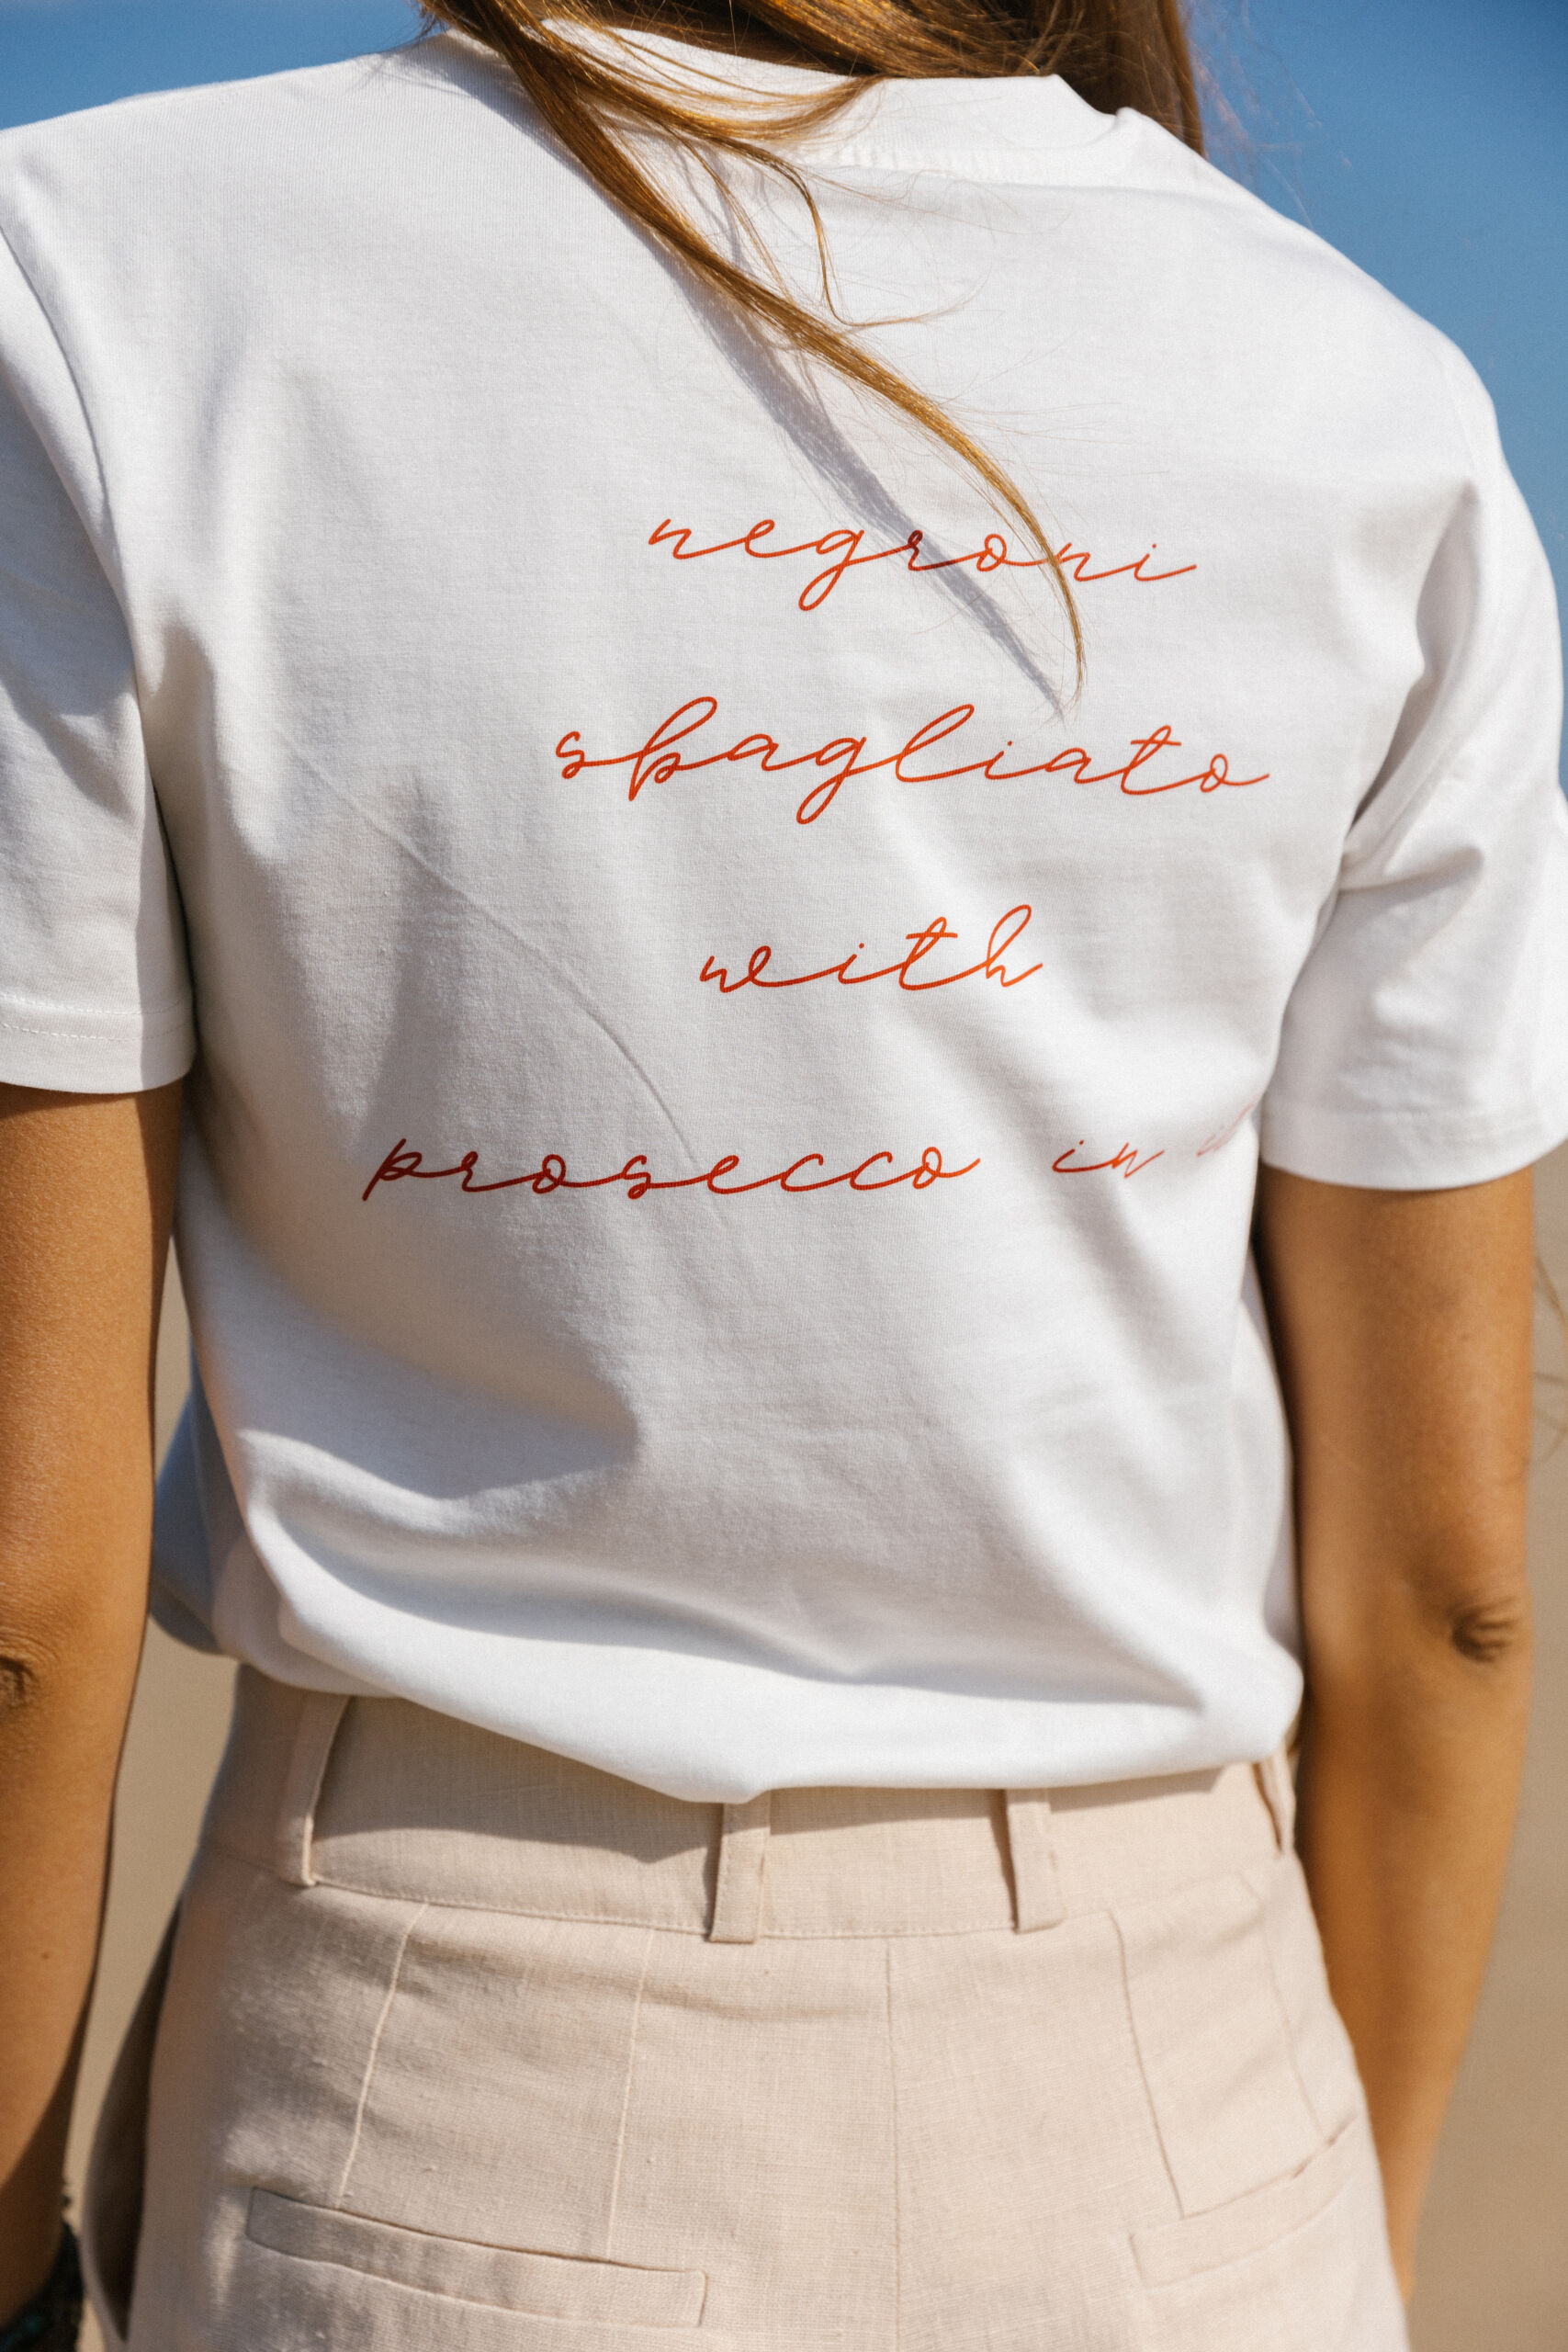 t-shirt z bawełny organicznej z napisem negrowi sbagliato with prosecco in it